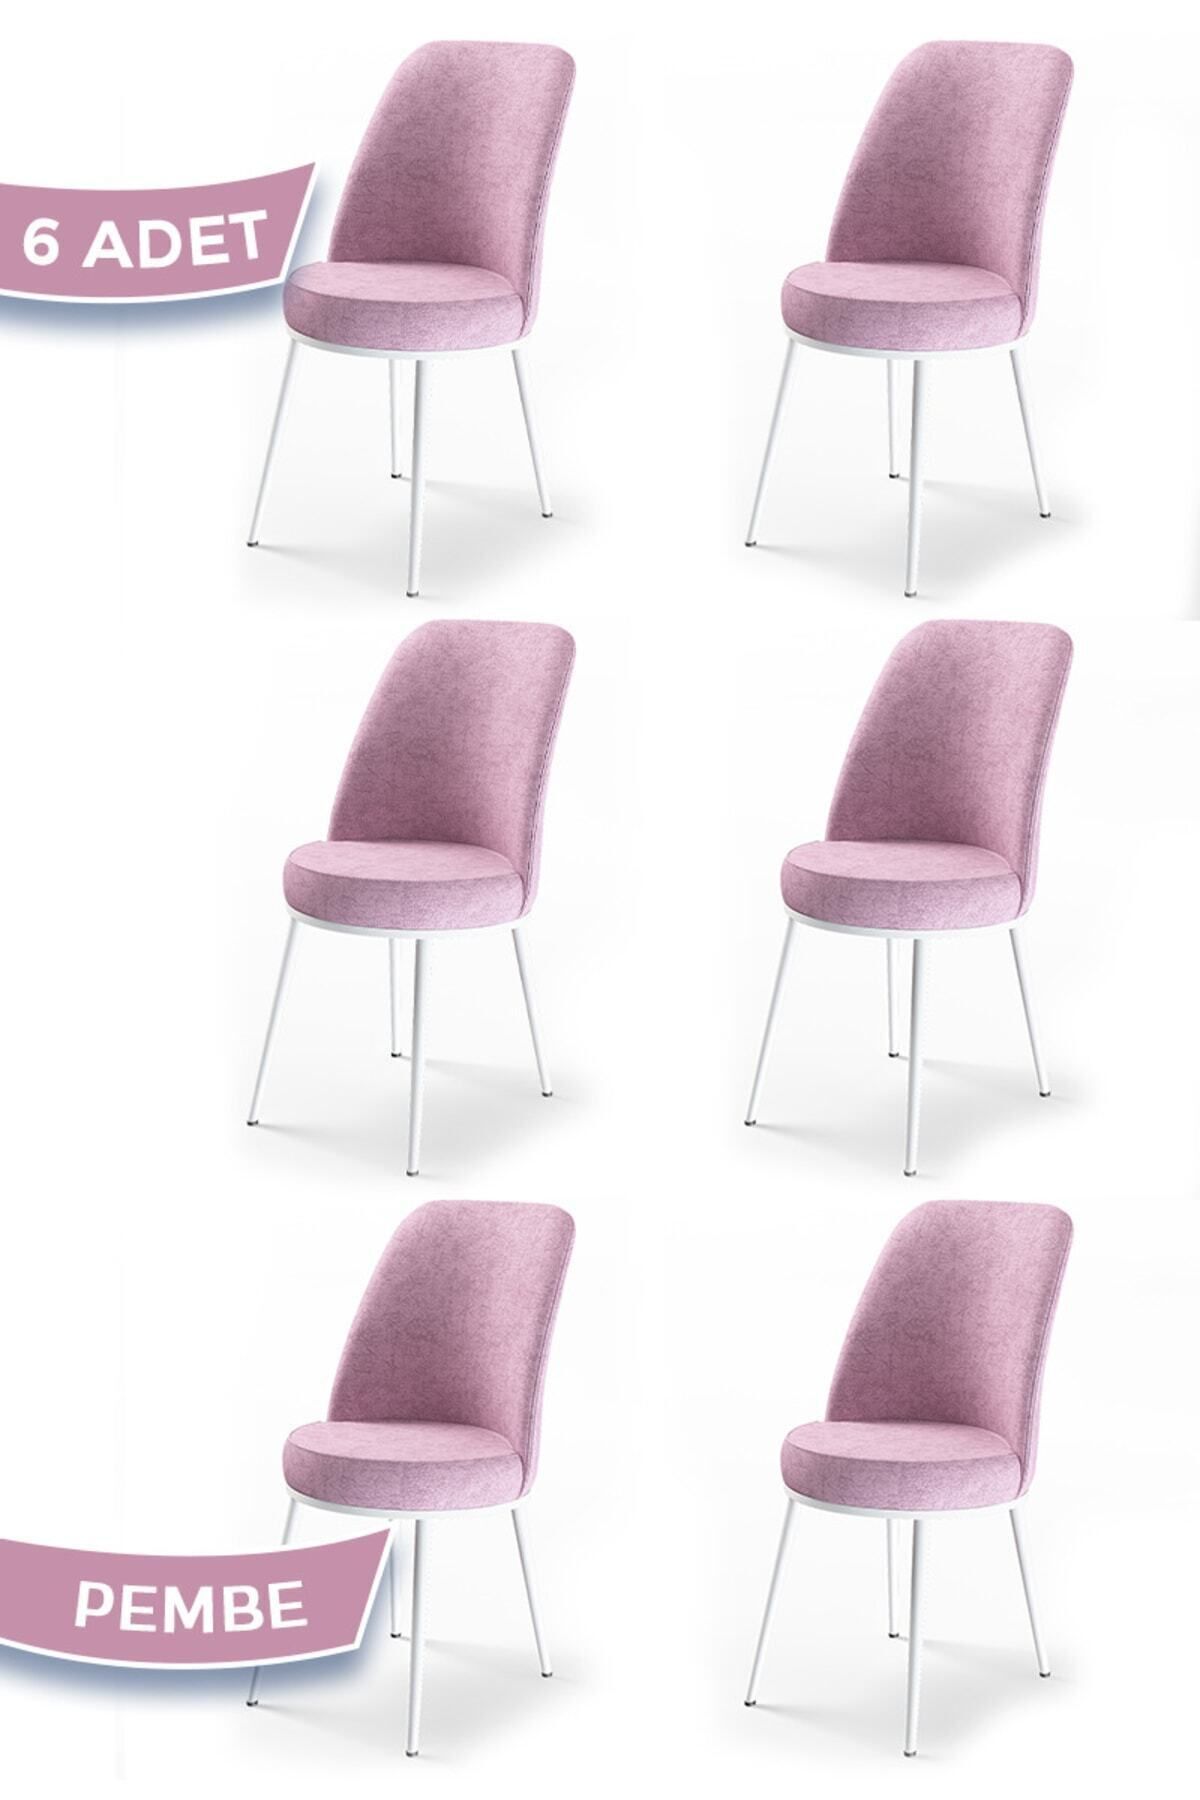 Canisa Concept Dexa Serisi Pembe Renk 6 Adet Sandalye, Renk Pembe, Ayaklar Beyaz